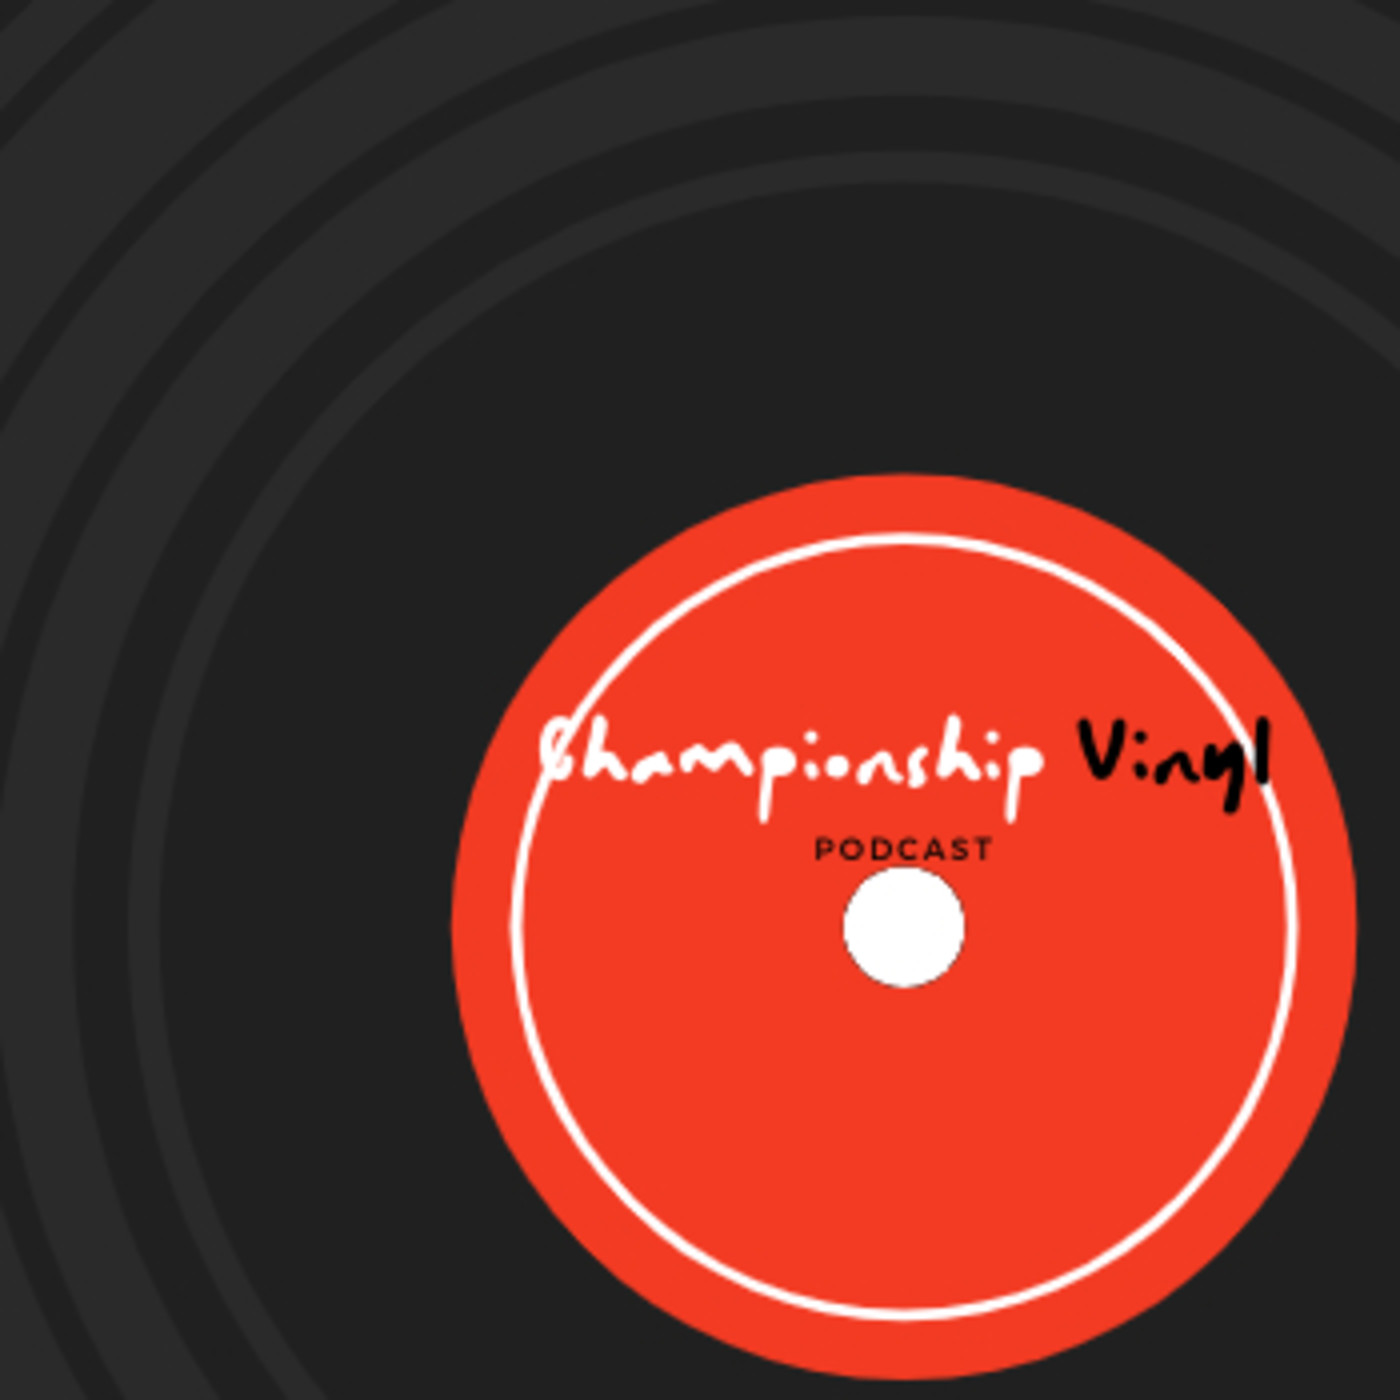 Championship Vinyl 04 (colección soul)